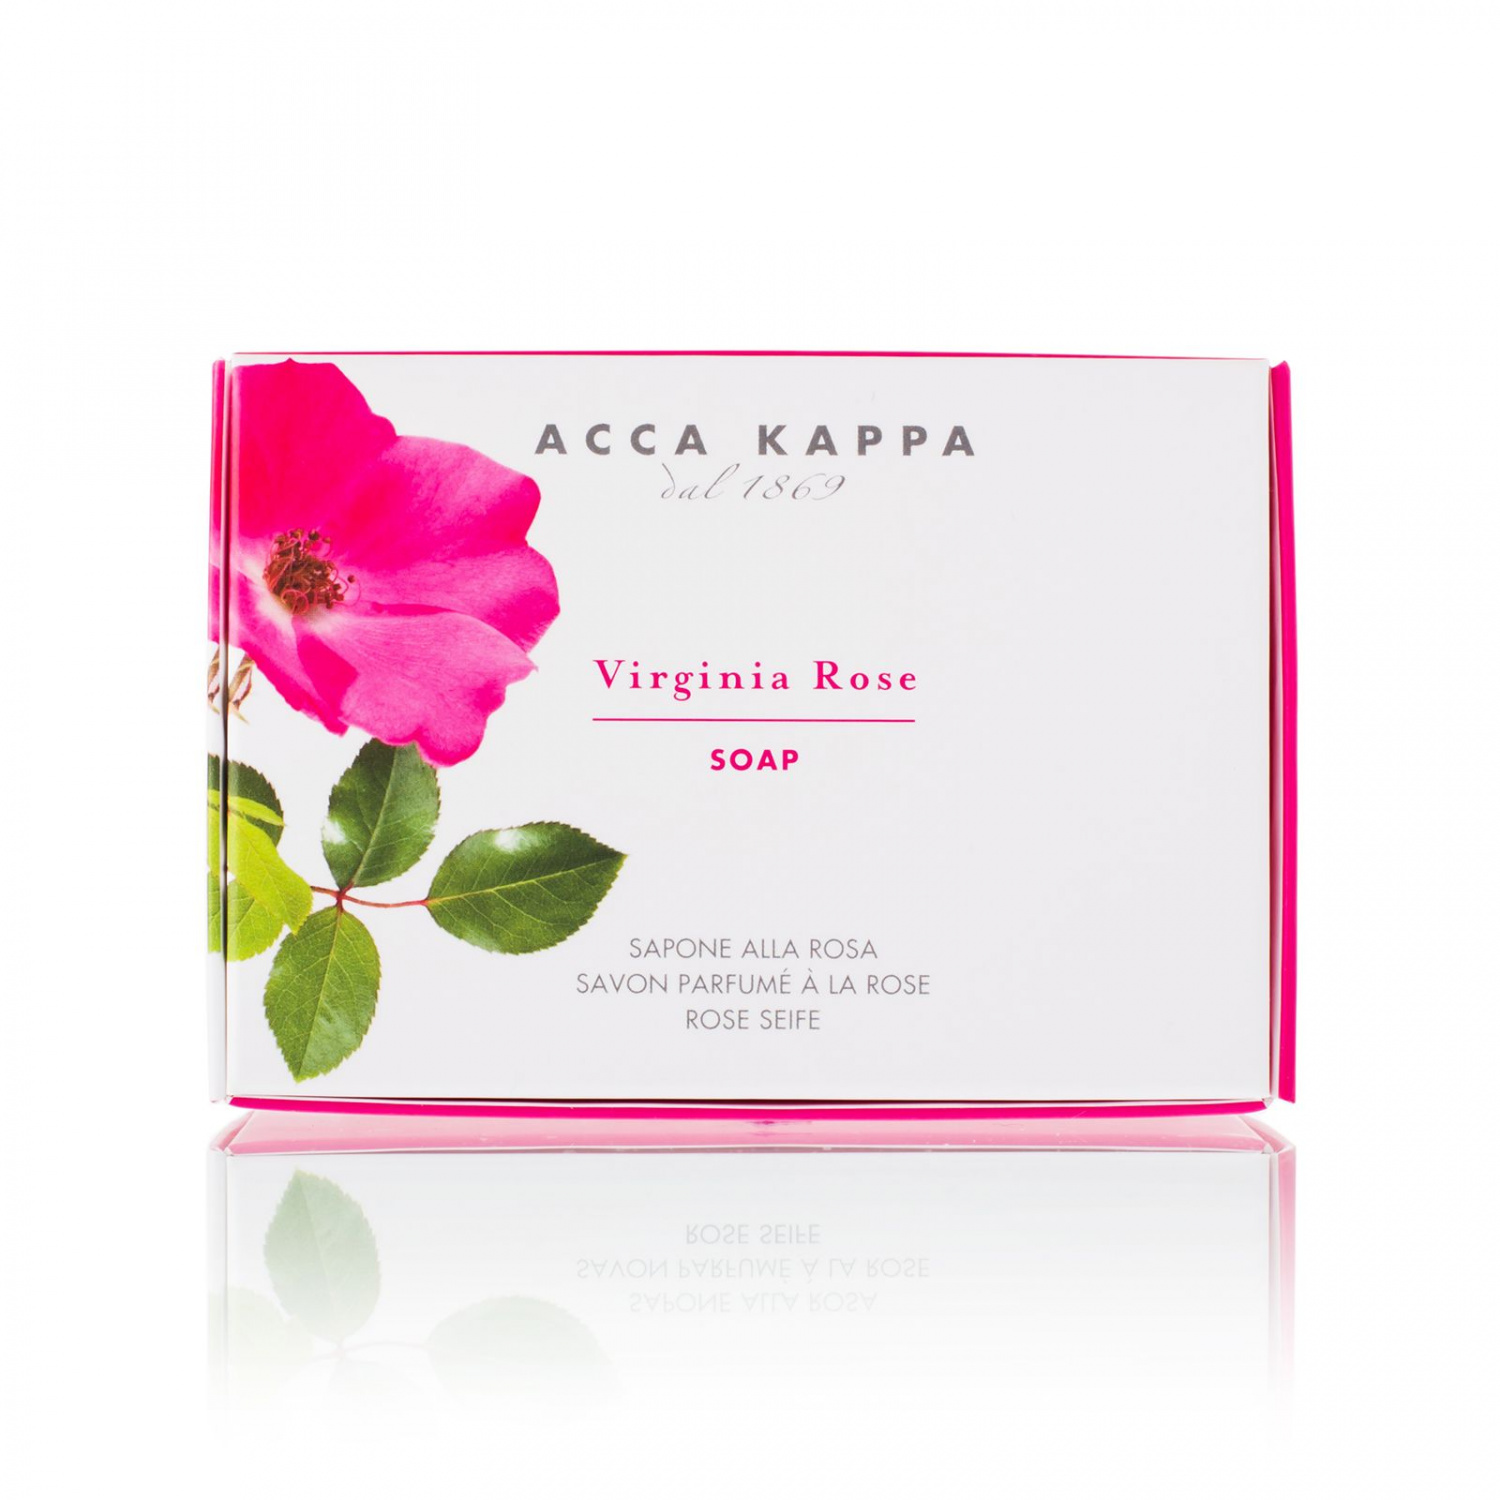 Acca Kappa Virginia Rose Soap 150g - интернет-магазин профессиональной косметики Spadream, изображение 38841